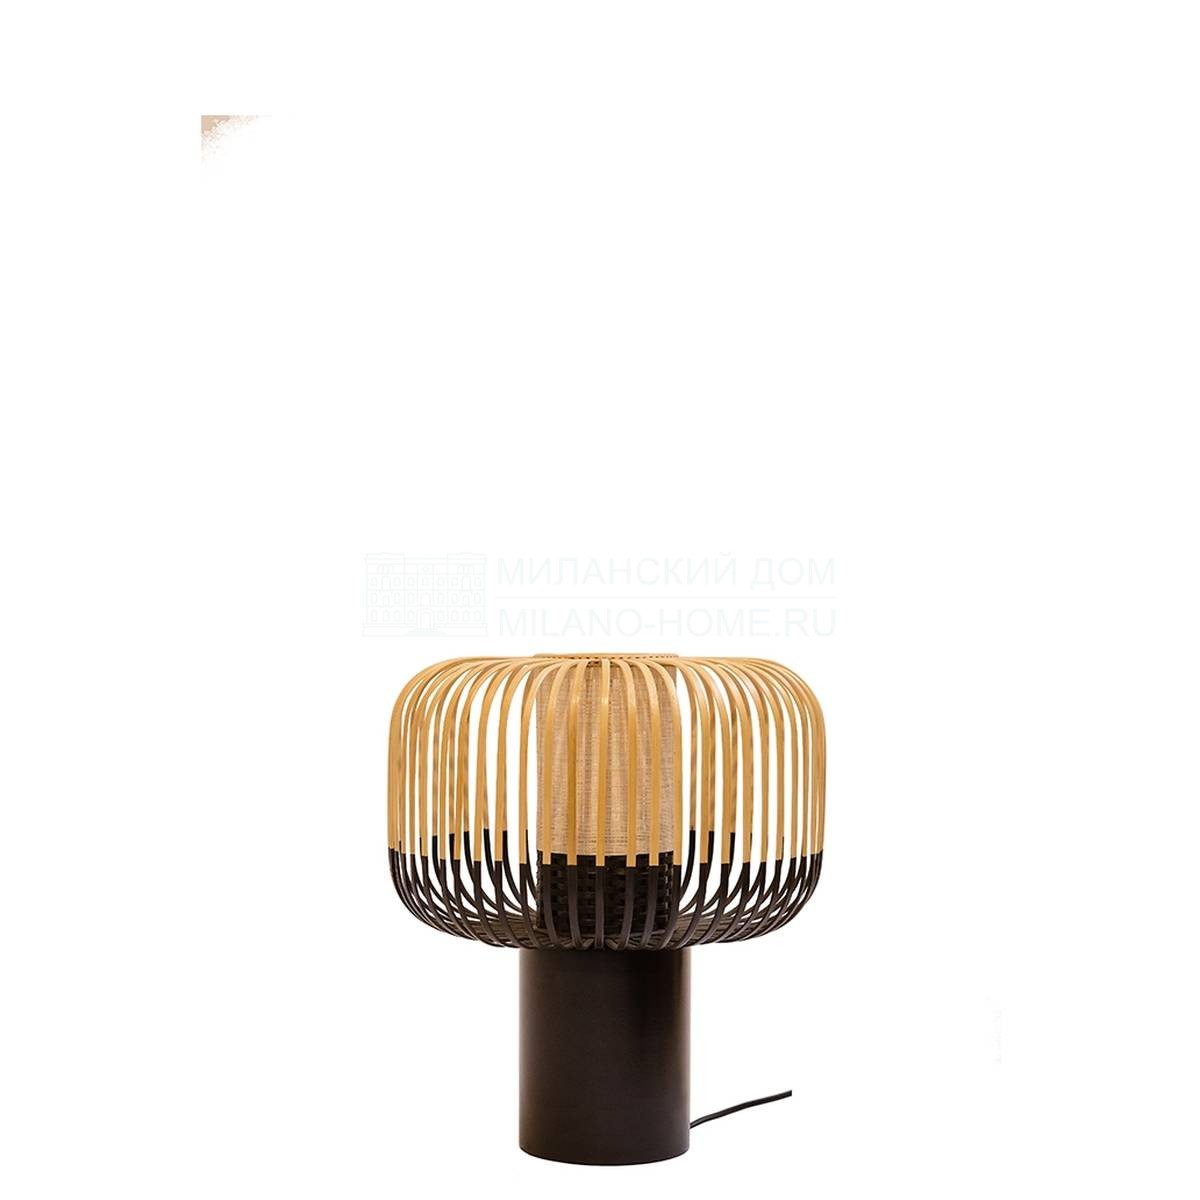 Настольная лампа Lamp bamboo light ht40/diam35 из Франции фабрики FORESTIER